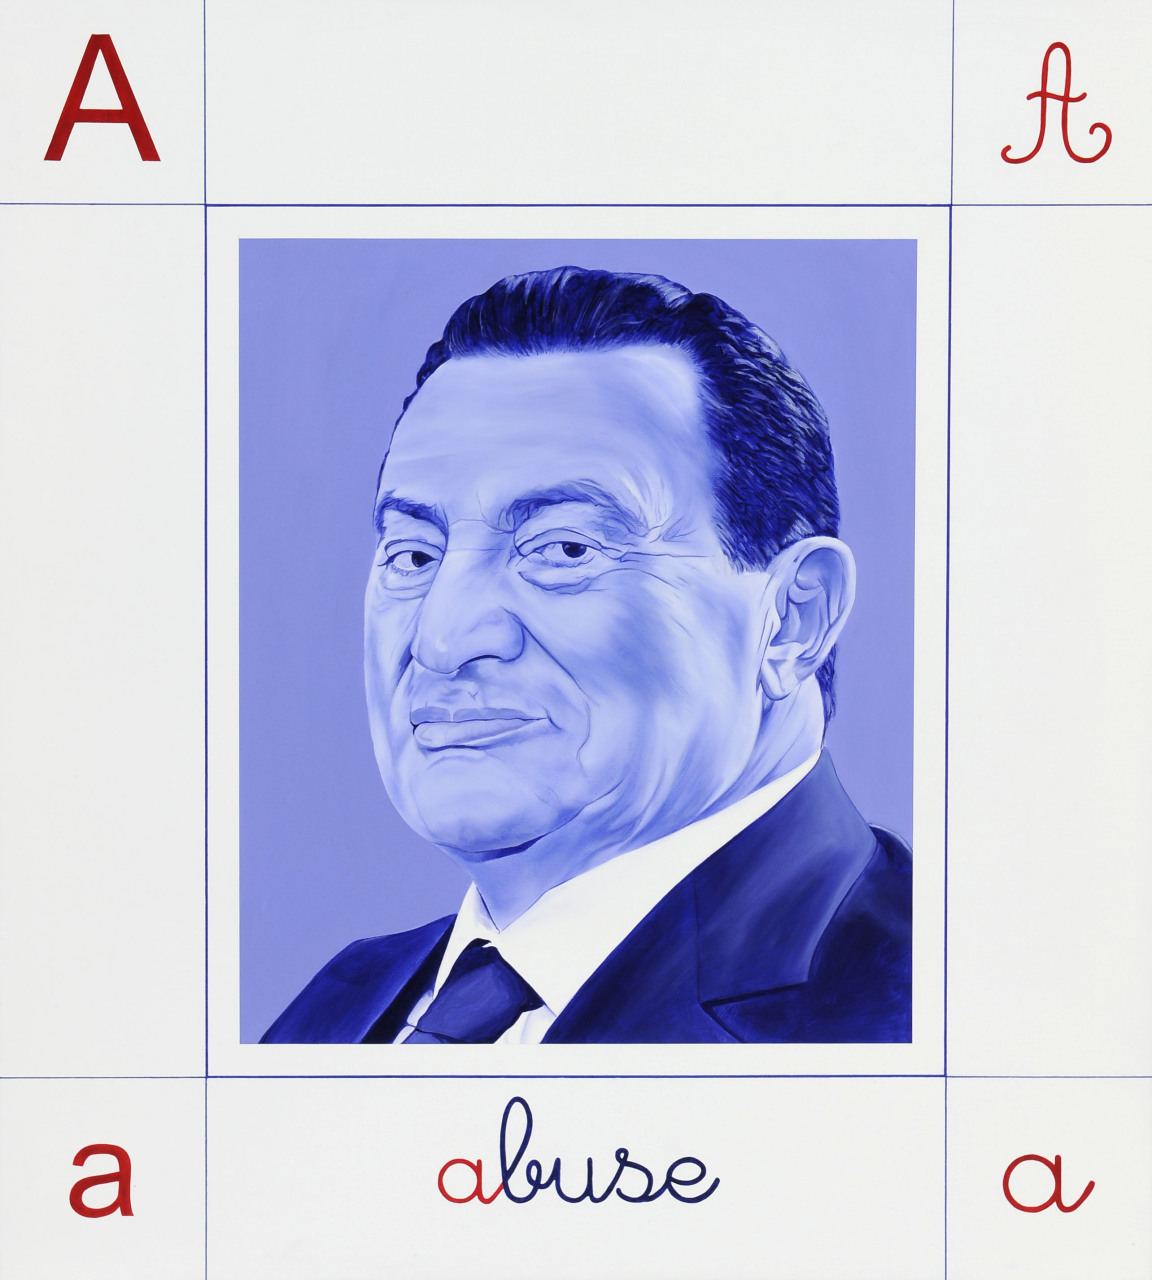 Mubarak